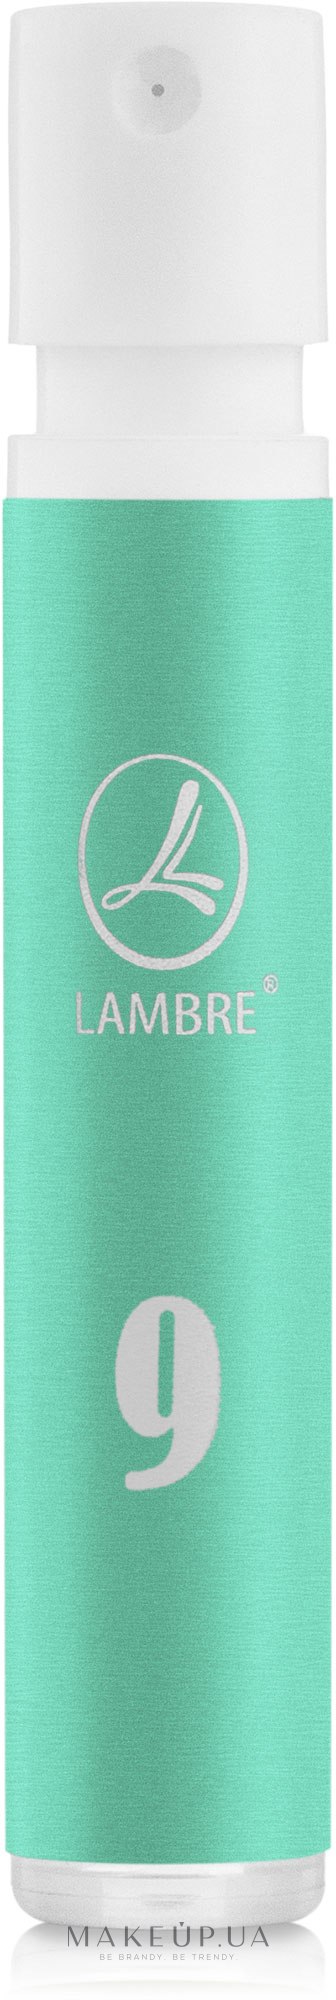 Lambre № 9 - Духи (пробник) — фото 1.2ml